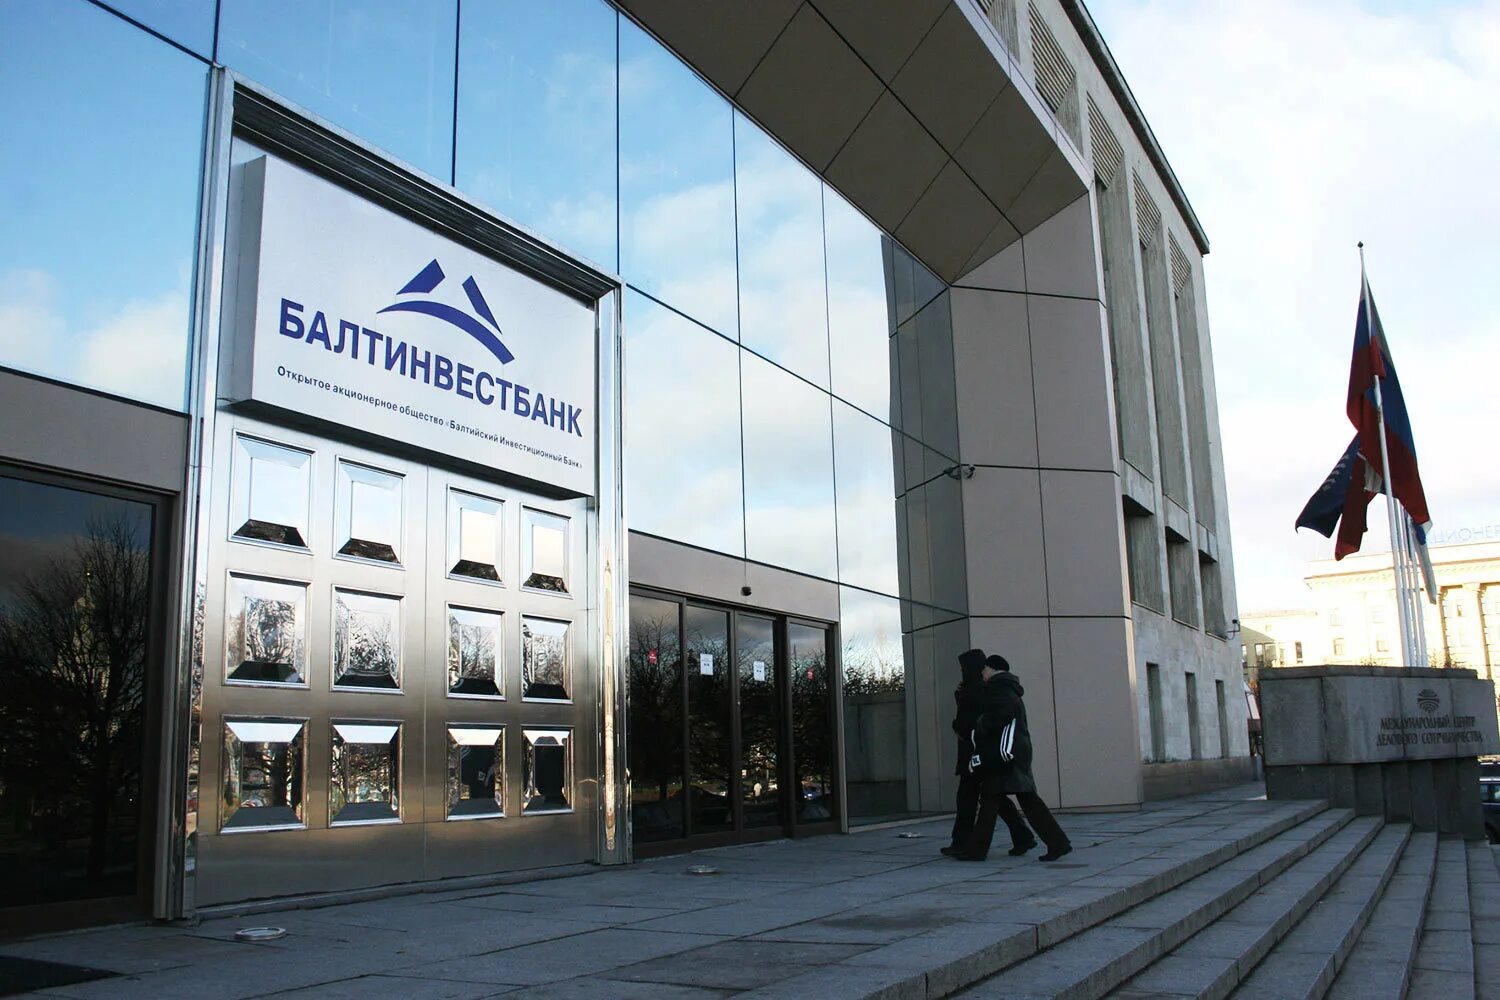 Балтинвестбанк в Санкт-Петербурге. Балтинвестбанк ипотека. Инвестиционный банк фото. Балтинвестбанк фото.